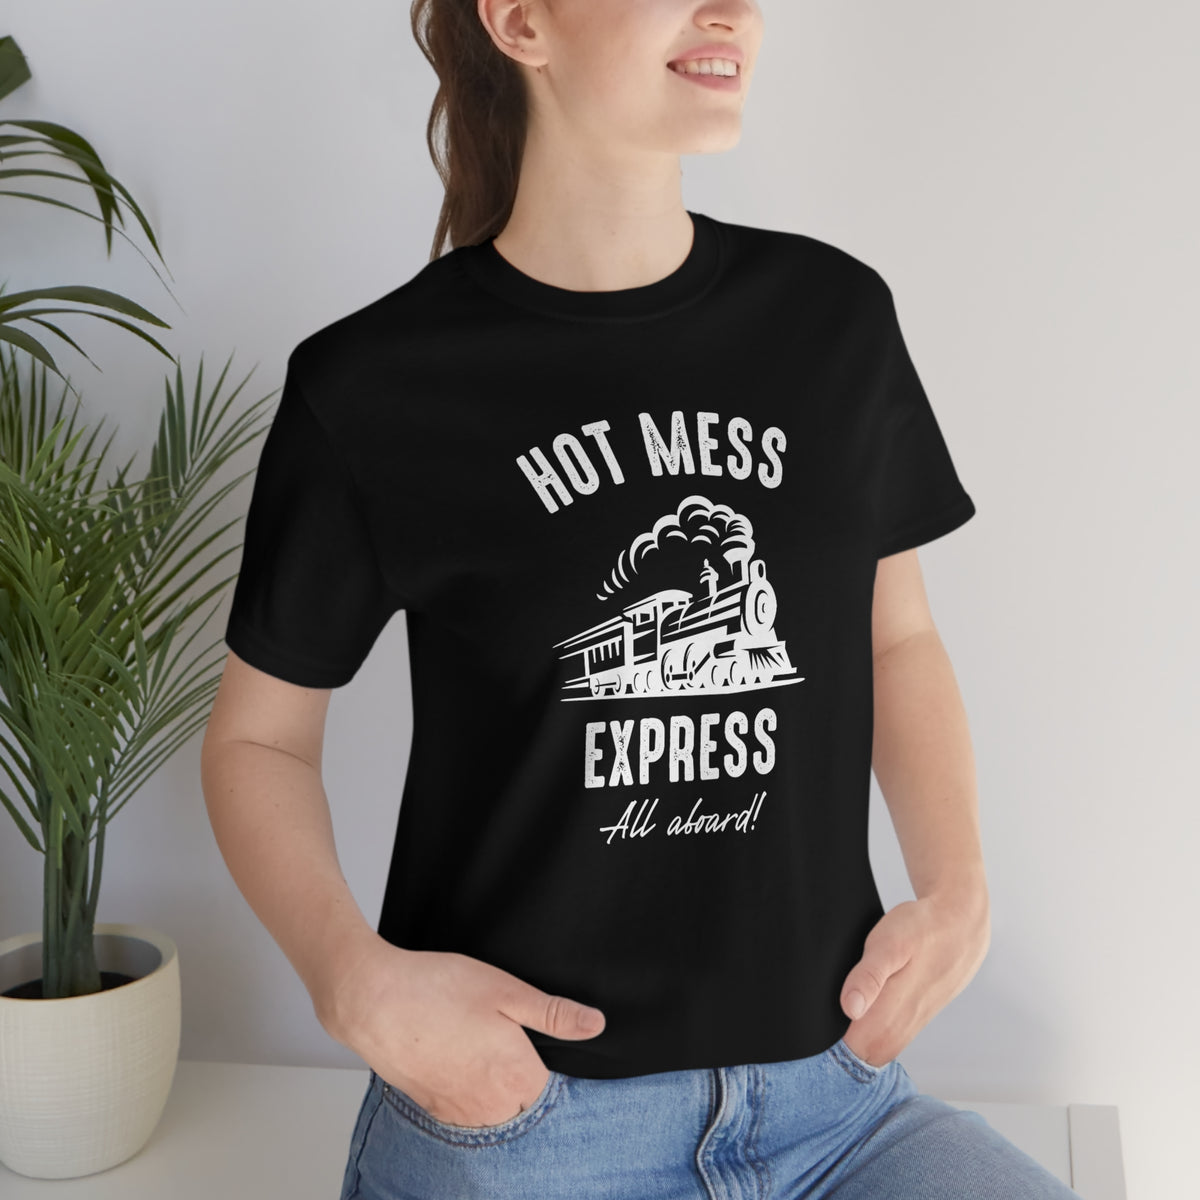 Hot Mess Express shirt